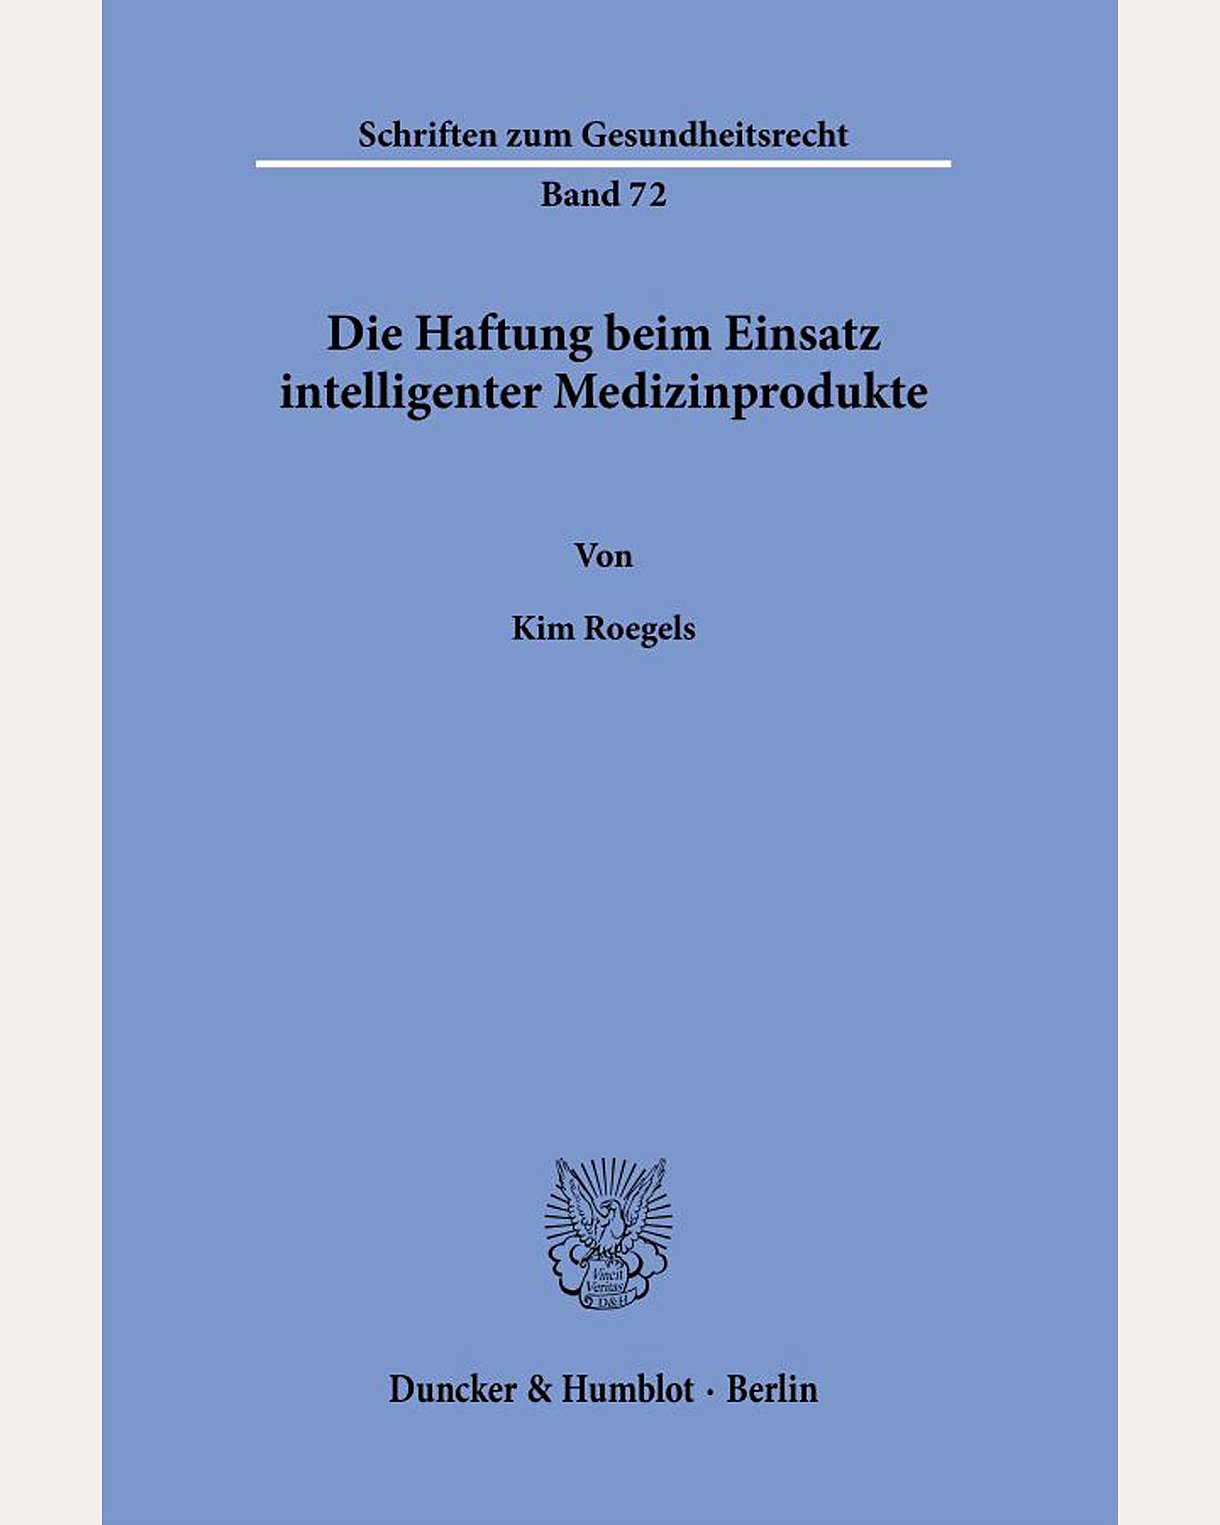 Cover des Buches "Die Haftung beim Einsatz intelligenter Medizinprodukte" in Taubenblau